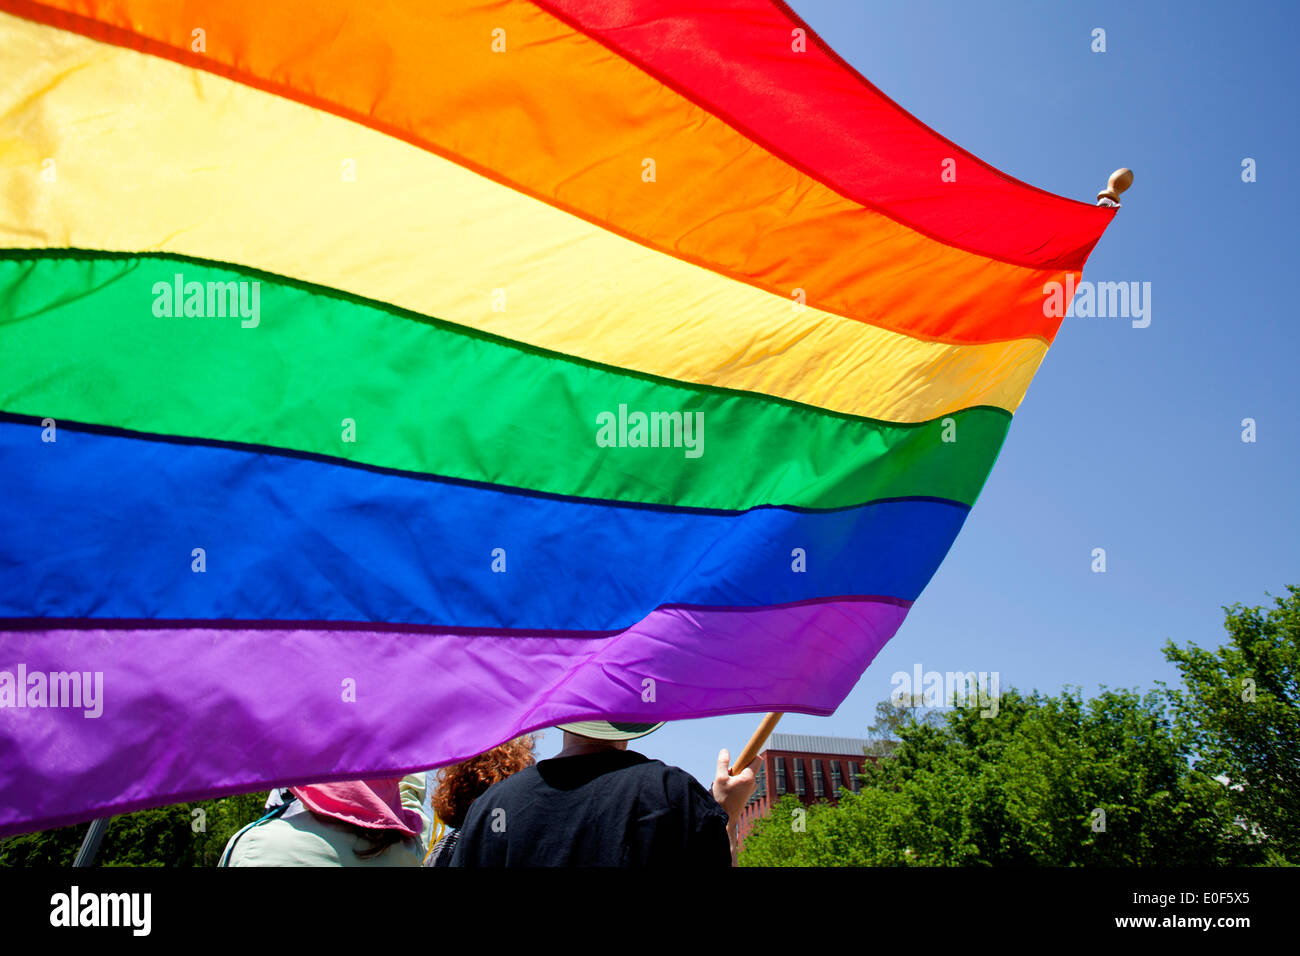 Personne tenant un drapeau arc-en-ciel au rassemblement LGBT - Washington, DC USA Banque D'Images